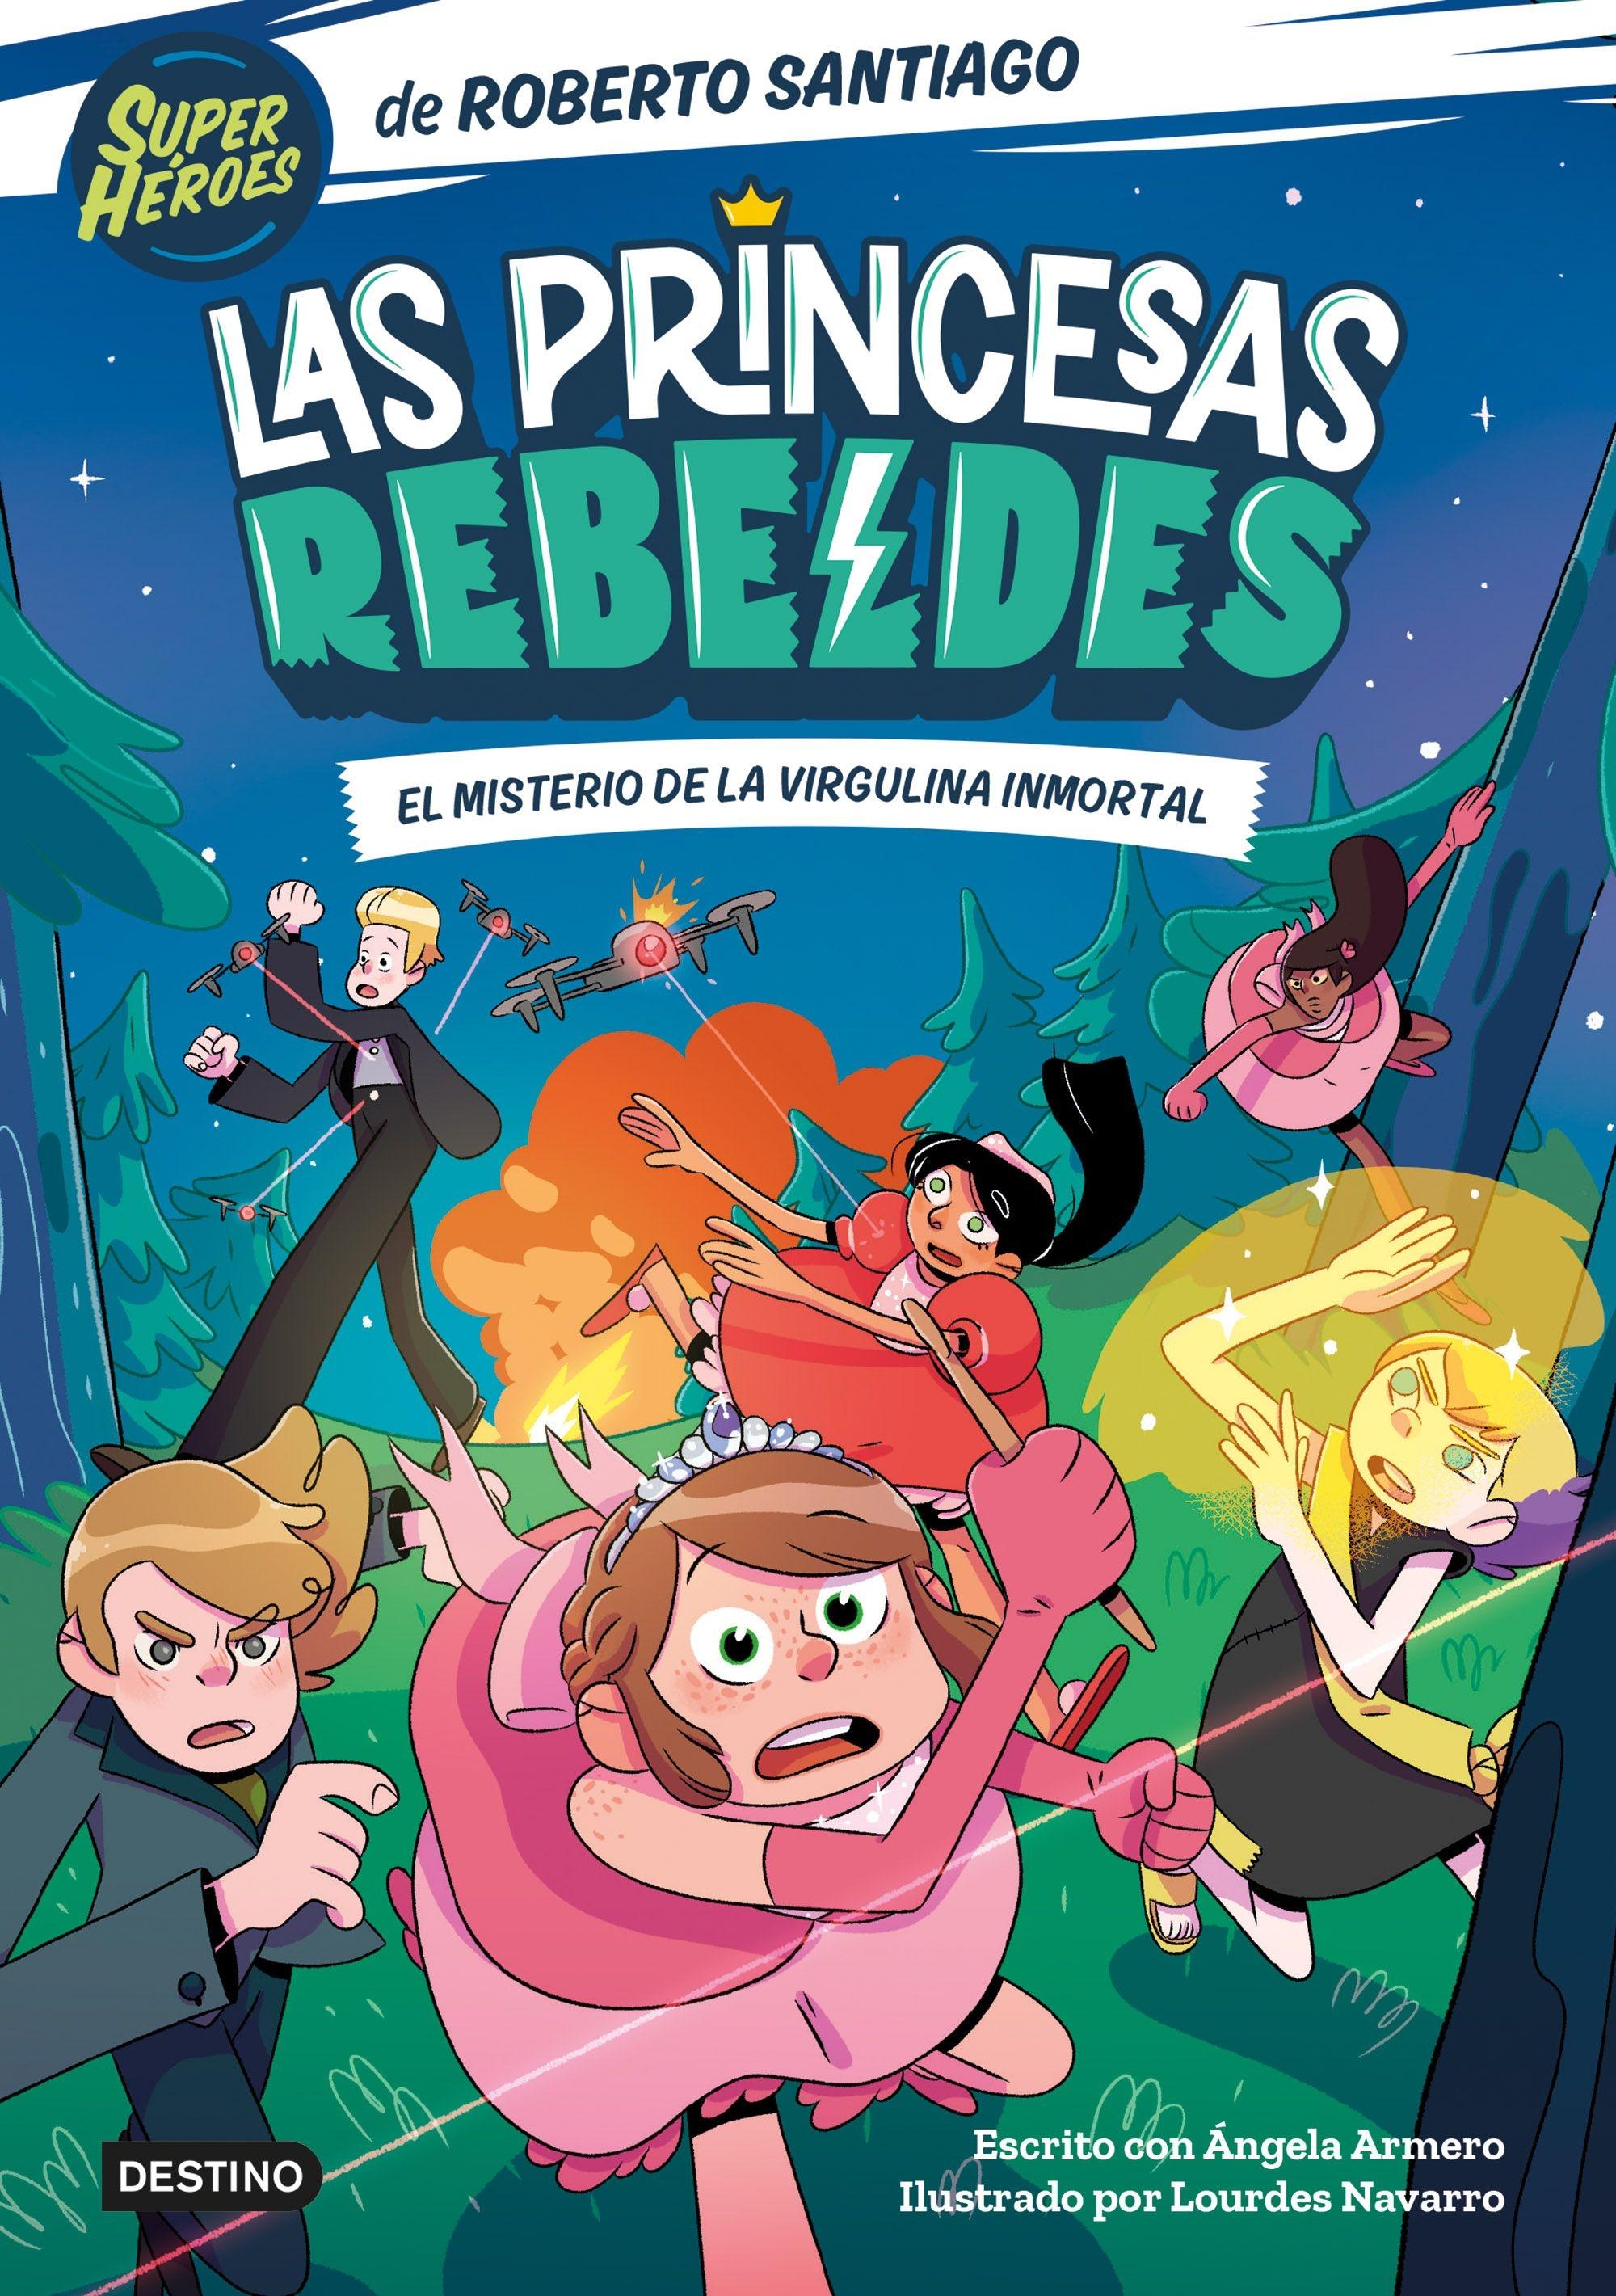 Las Princesas Rebeldes 1 "El misterio de la virgulina inmortal"